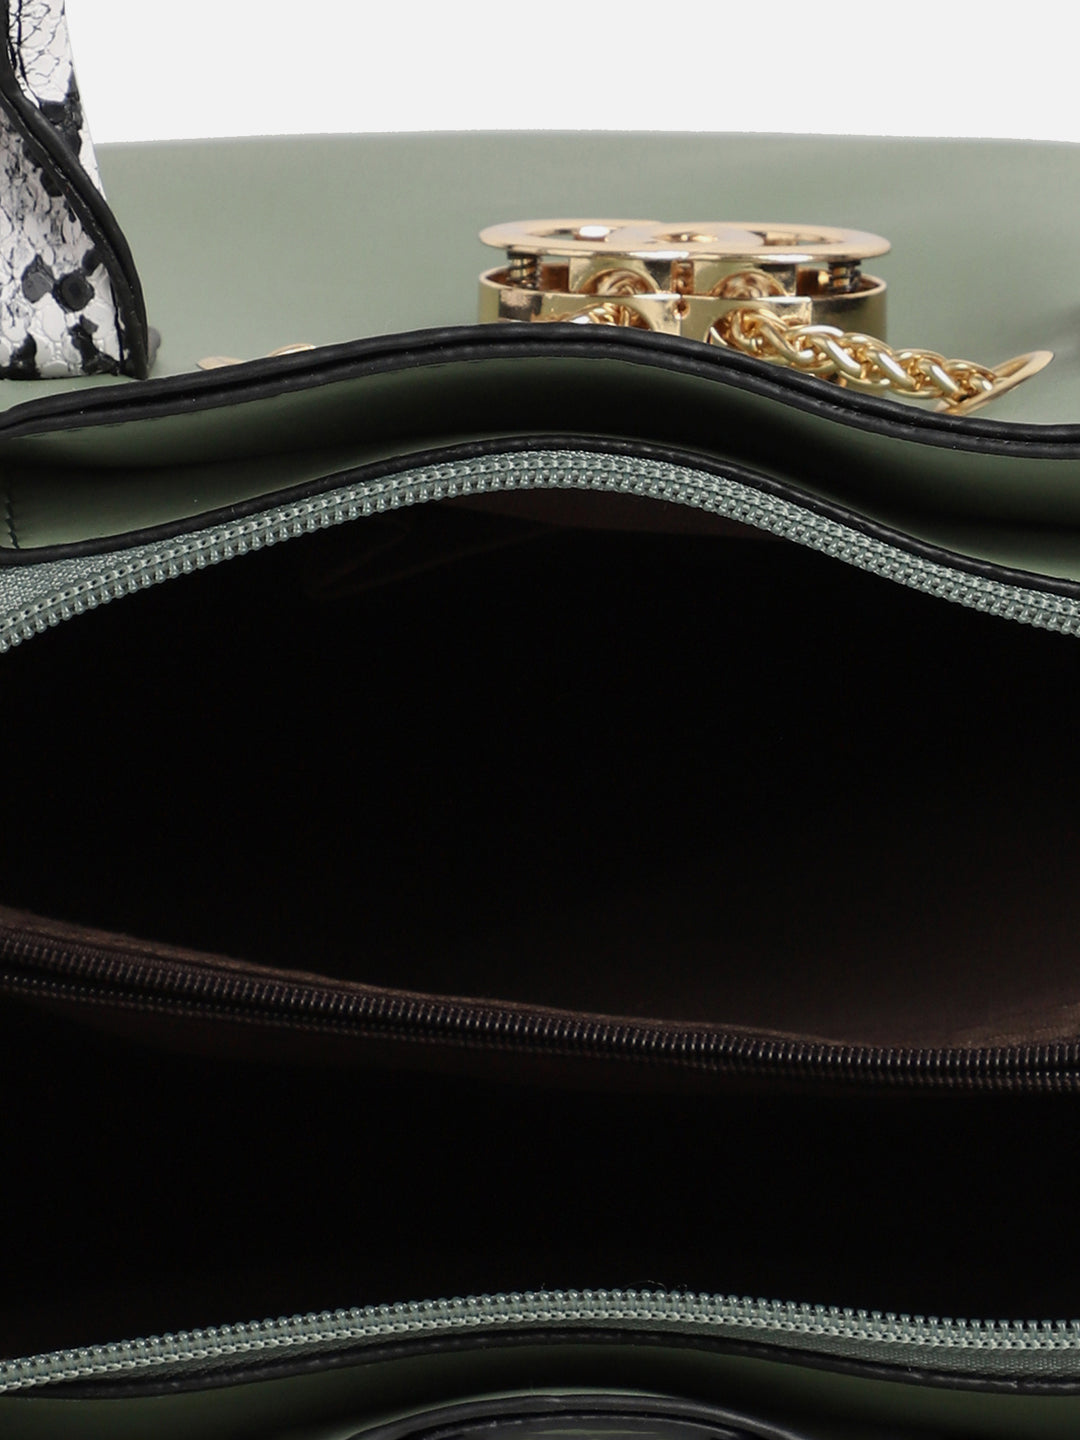 Olivie Green Handbag